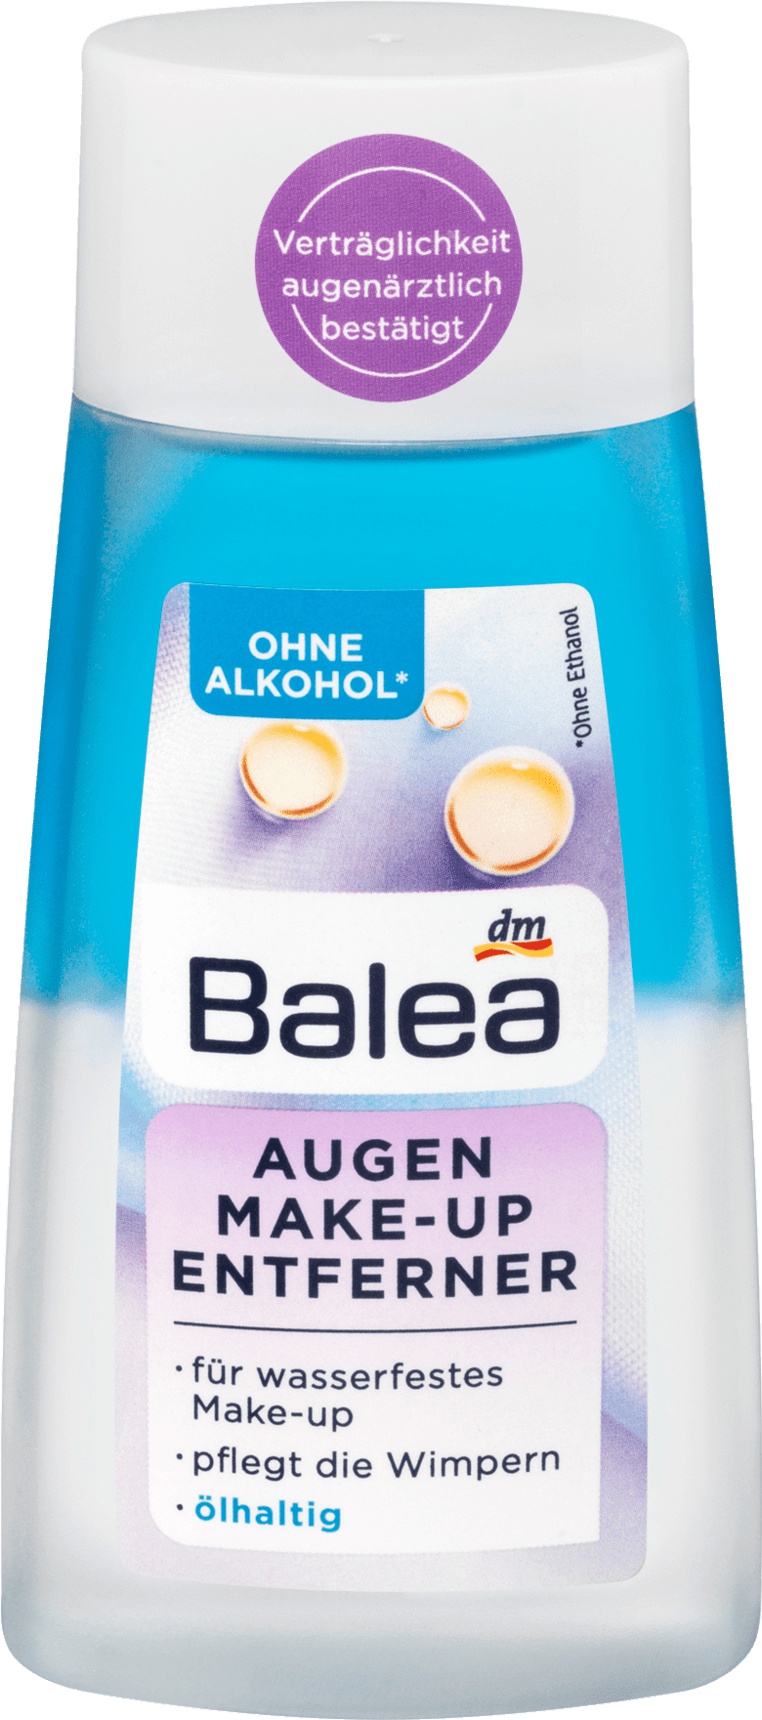 Balea Augen-Make-Up Entferner Ölhaltig / Eye Make-Up Remover